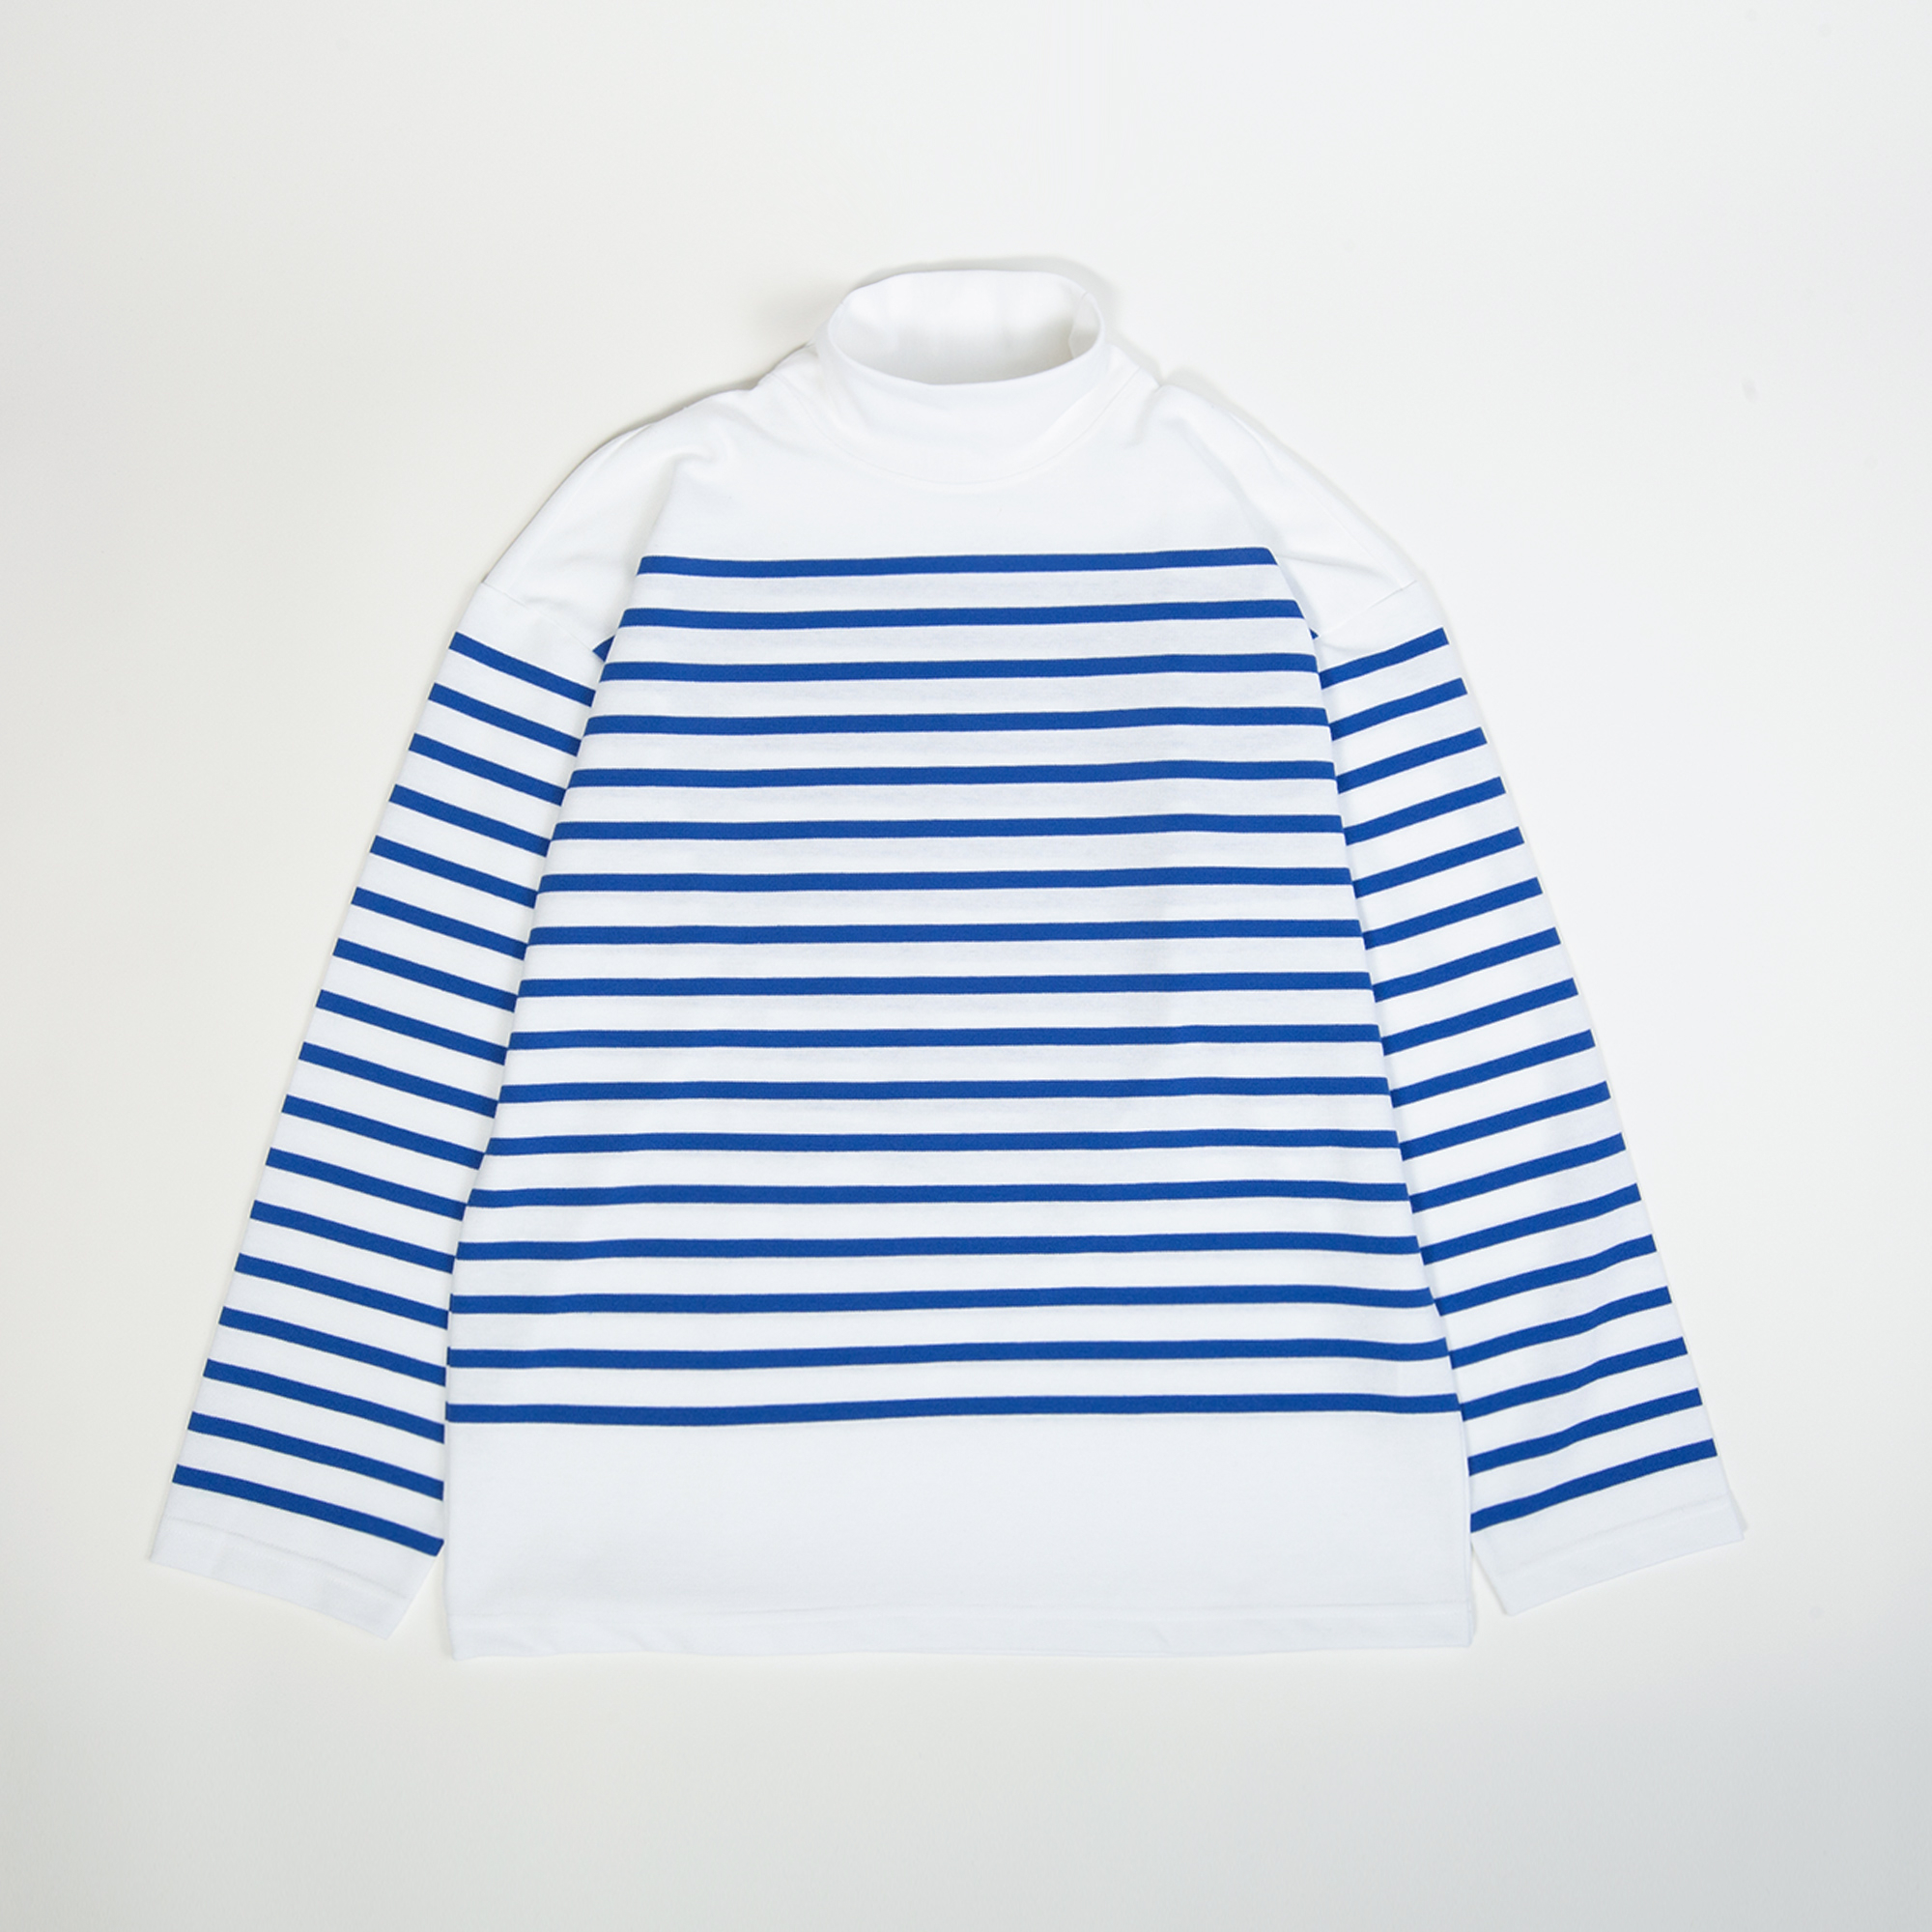 T-shirt ORLO coloris Blanc rayé bleu roy par Arpenteur